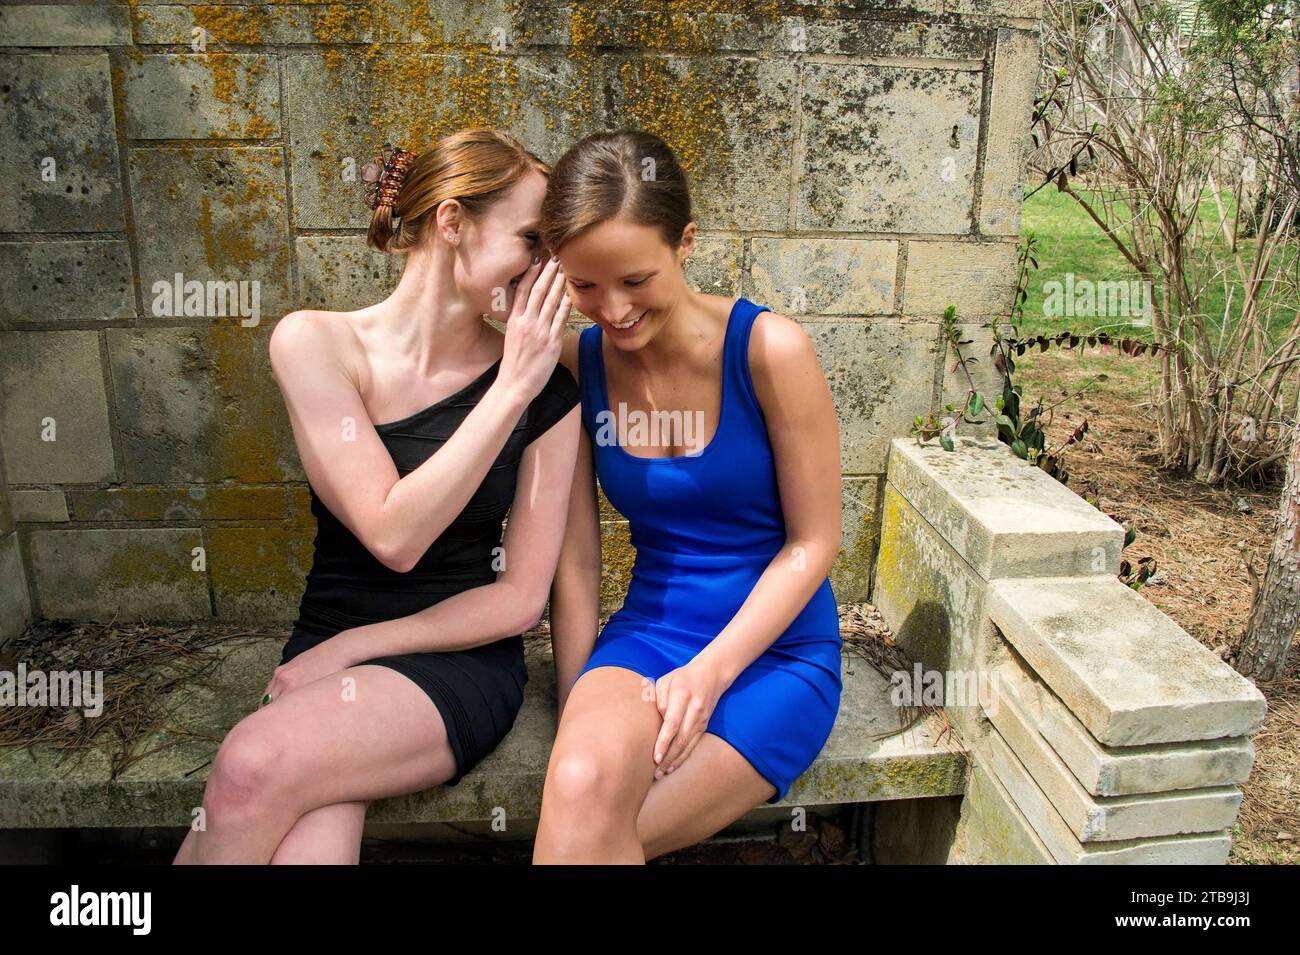 Deux jeunes femmes portant des mini-robes sont assises sur un banc dans un jardin se chuchotant des secrets ; Lincoln, Nebraska, États-Unis d'Amérique Banque D'Images